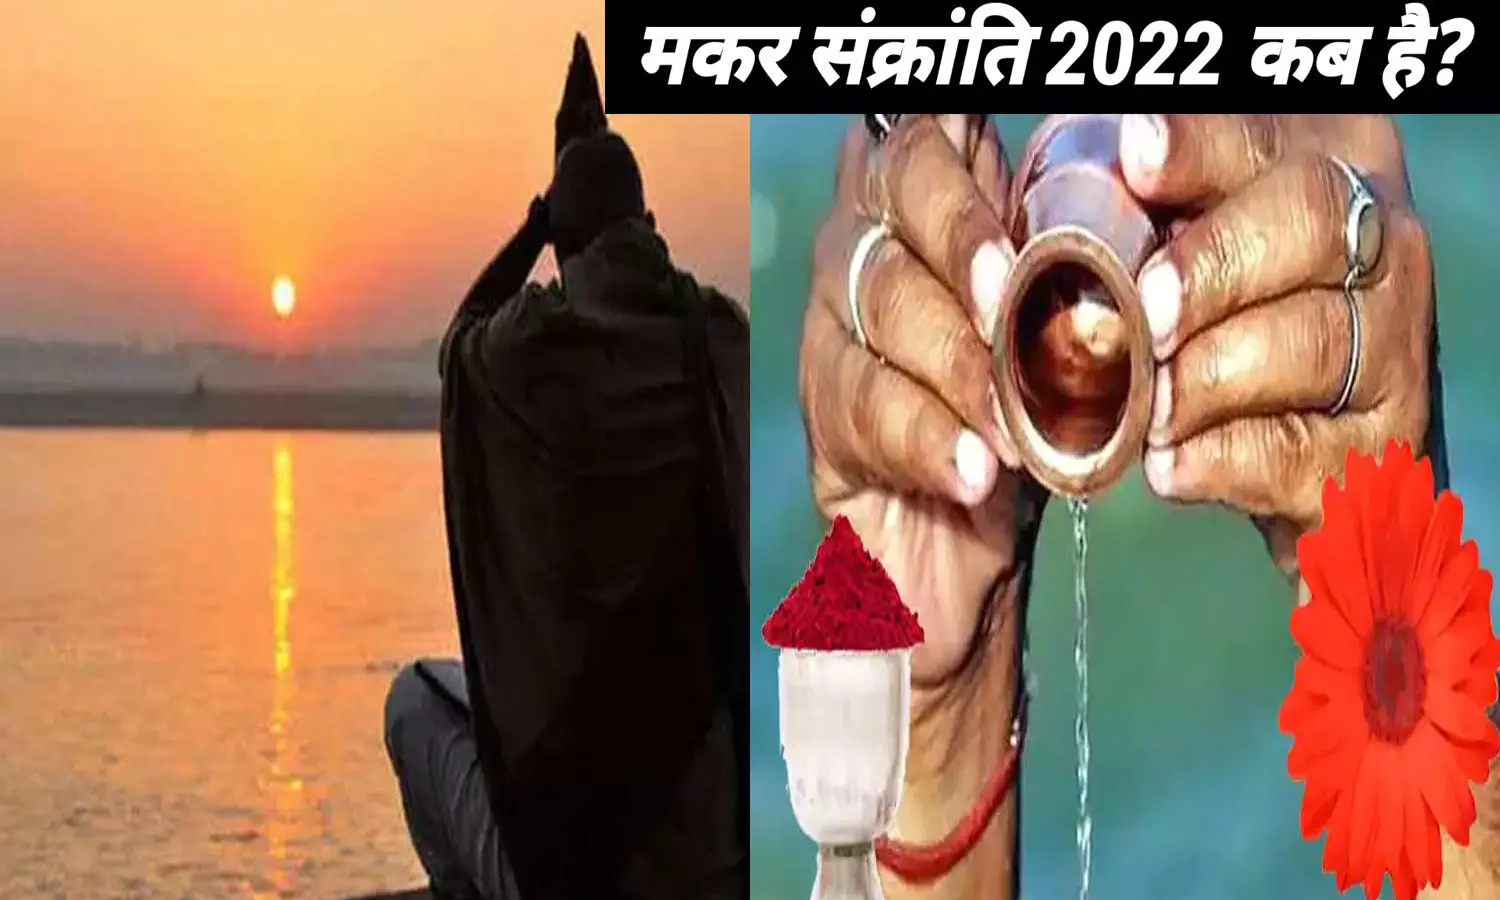 Makar Sankranti kab hai aur kitne baje se hai 2022